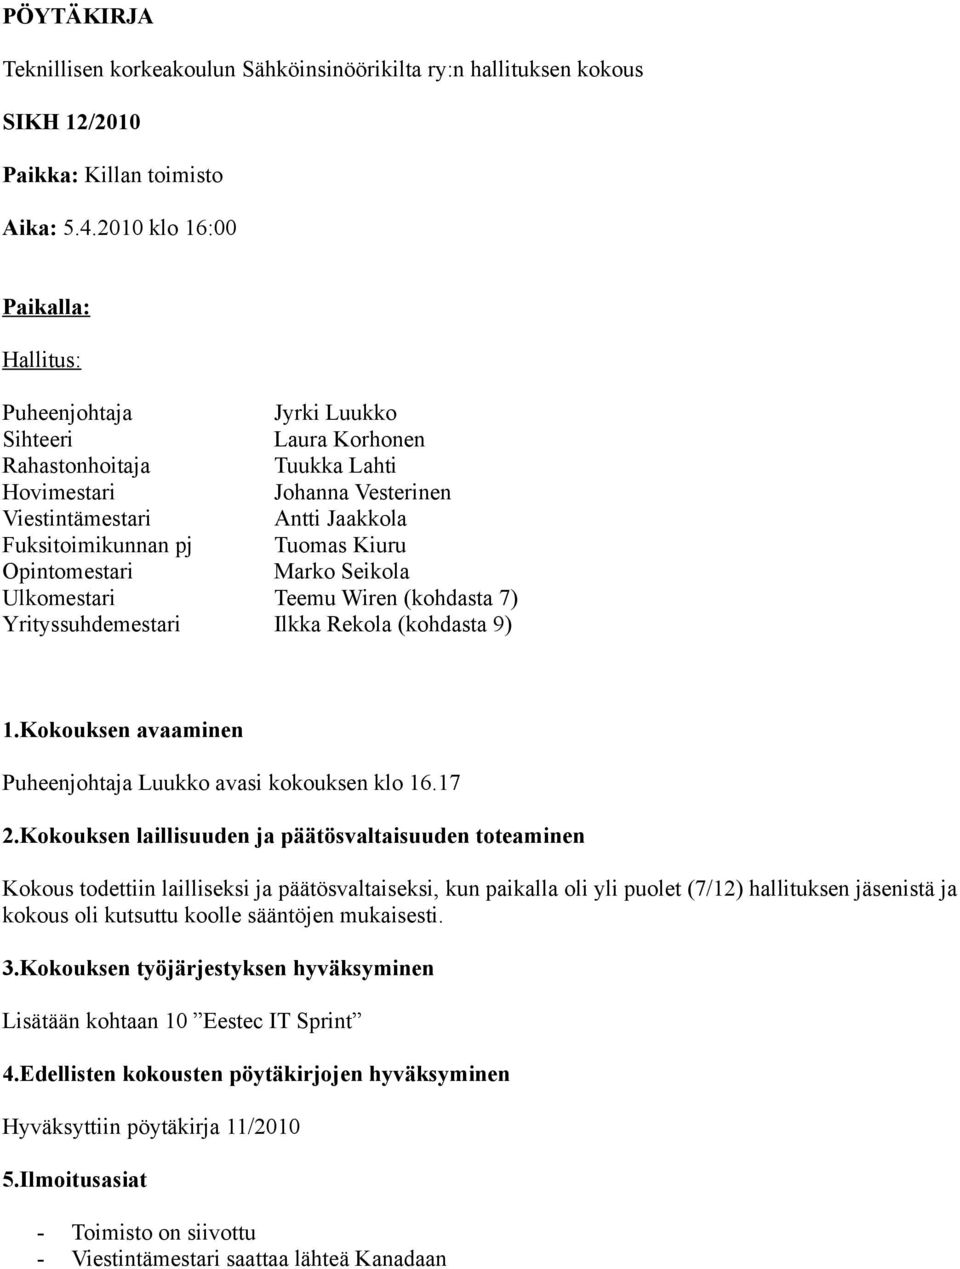 Tuomas Kiuru Opintomestari Marko Seikola Ulkomestari Teemu Wiren (kohdasta 7) Yrityssuhdemestari (kohdasta 9) 1.Kokouksen avaaminen Puheenjohtaja Luukko avasi kokouksen klo 16.17 2.